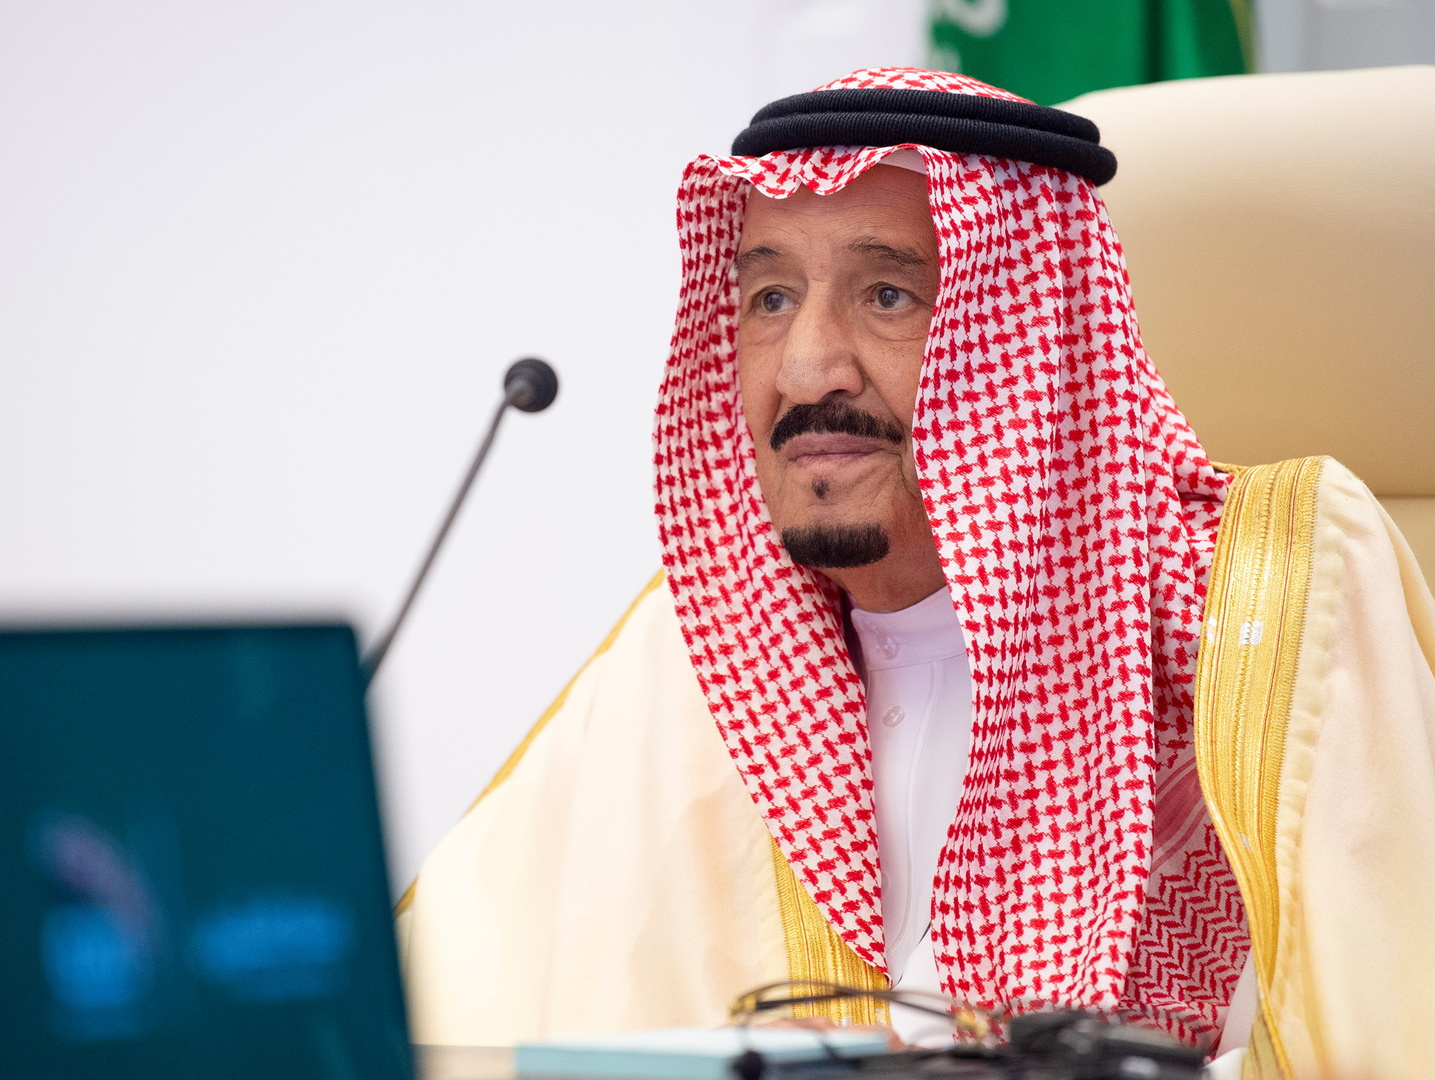 الملك سلمان يغيب عن قمة المصالحة الخليجية والمغردون يعلقون